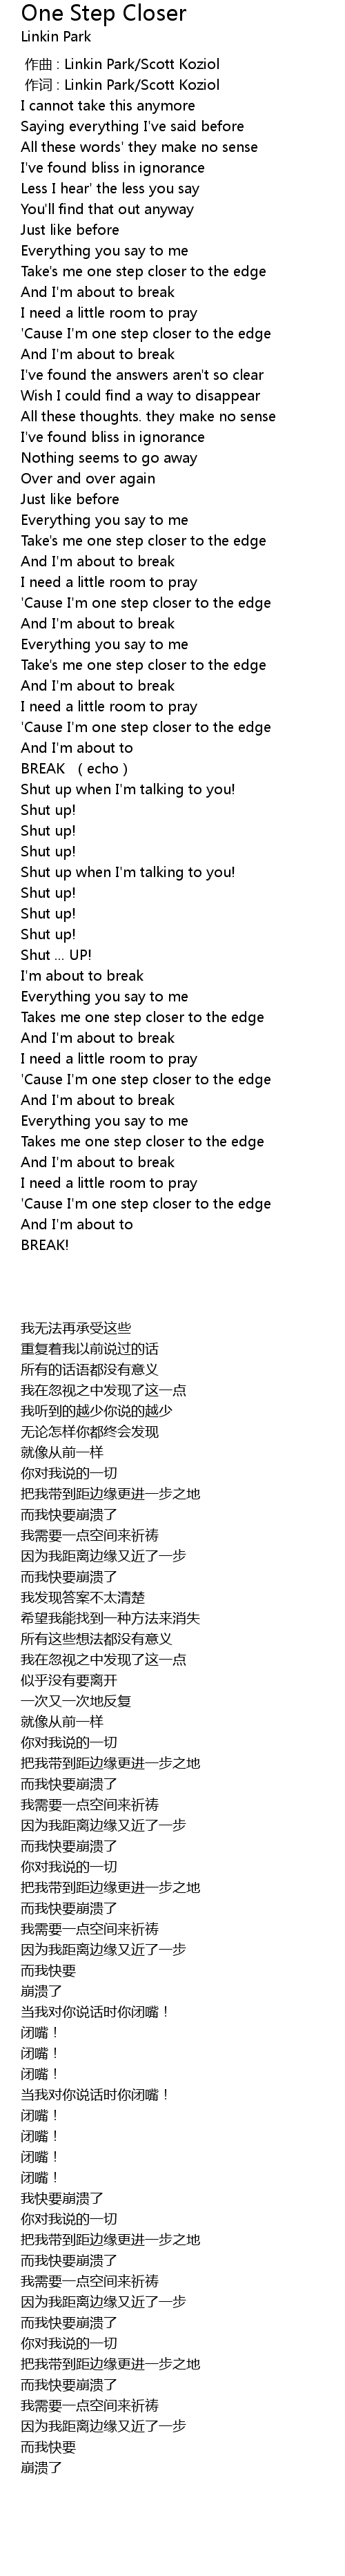 Closer lyrics